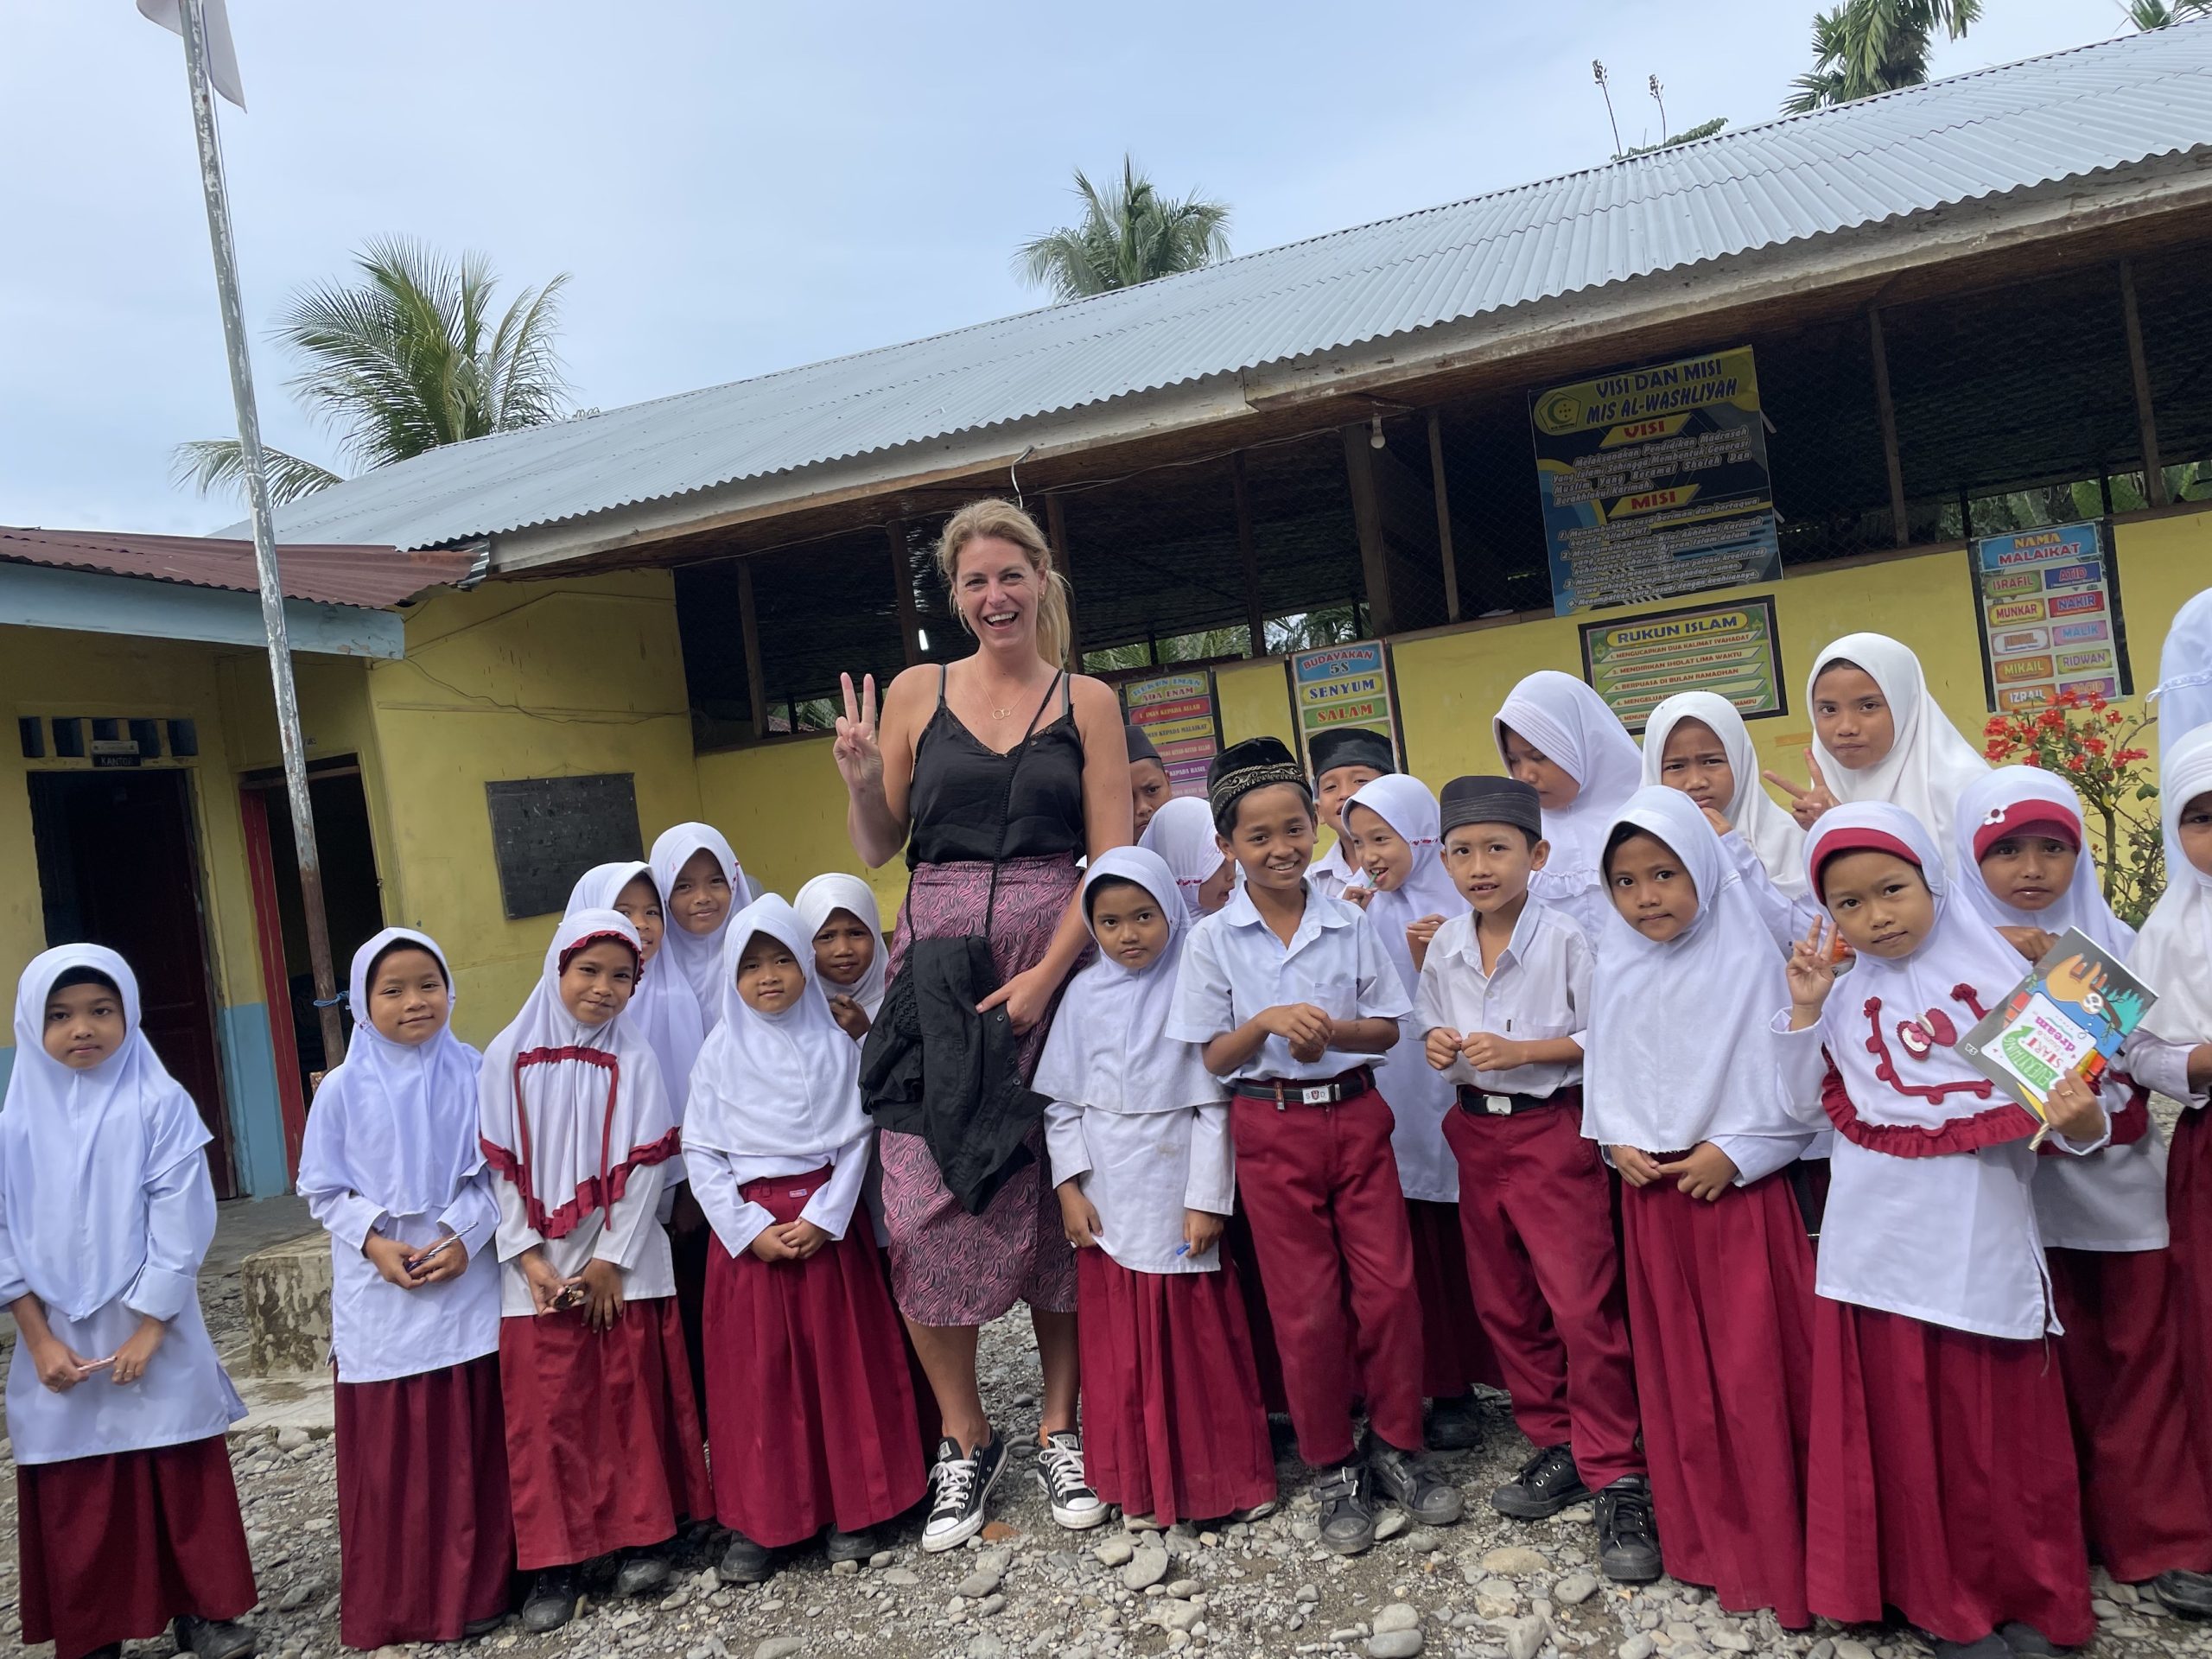 Je ontmoet al snel nieuwe mensen tijdens een soloreis en maakt snel contact met de lokale bevolking, zoals hier op Sumatra (Indonesië)